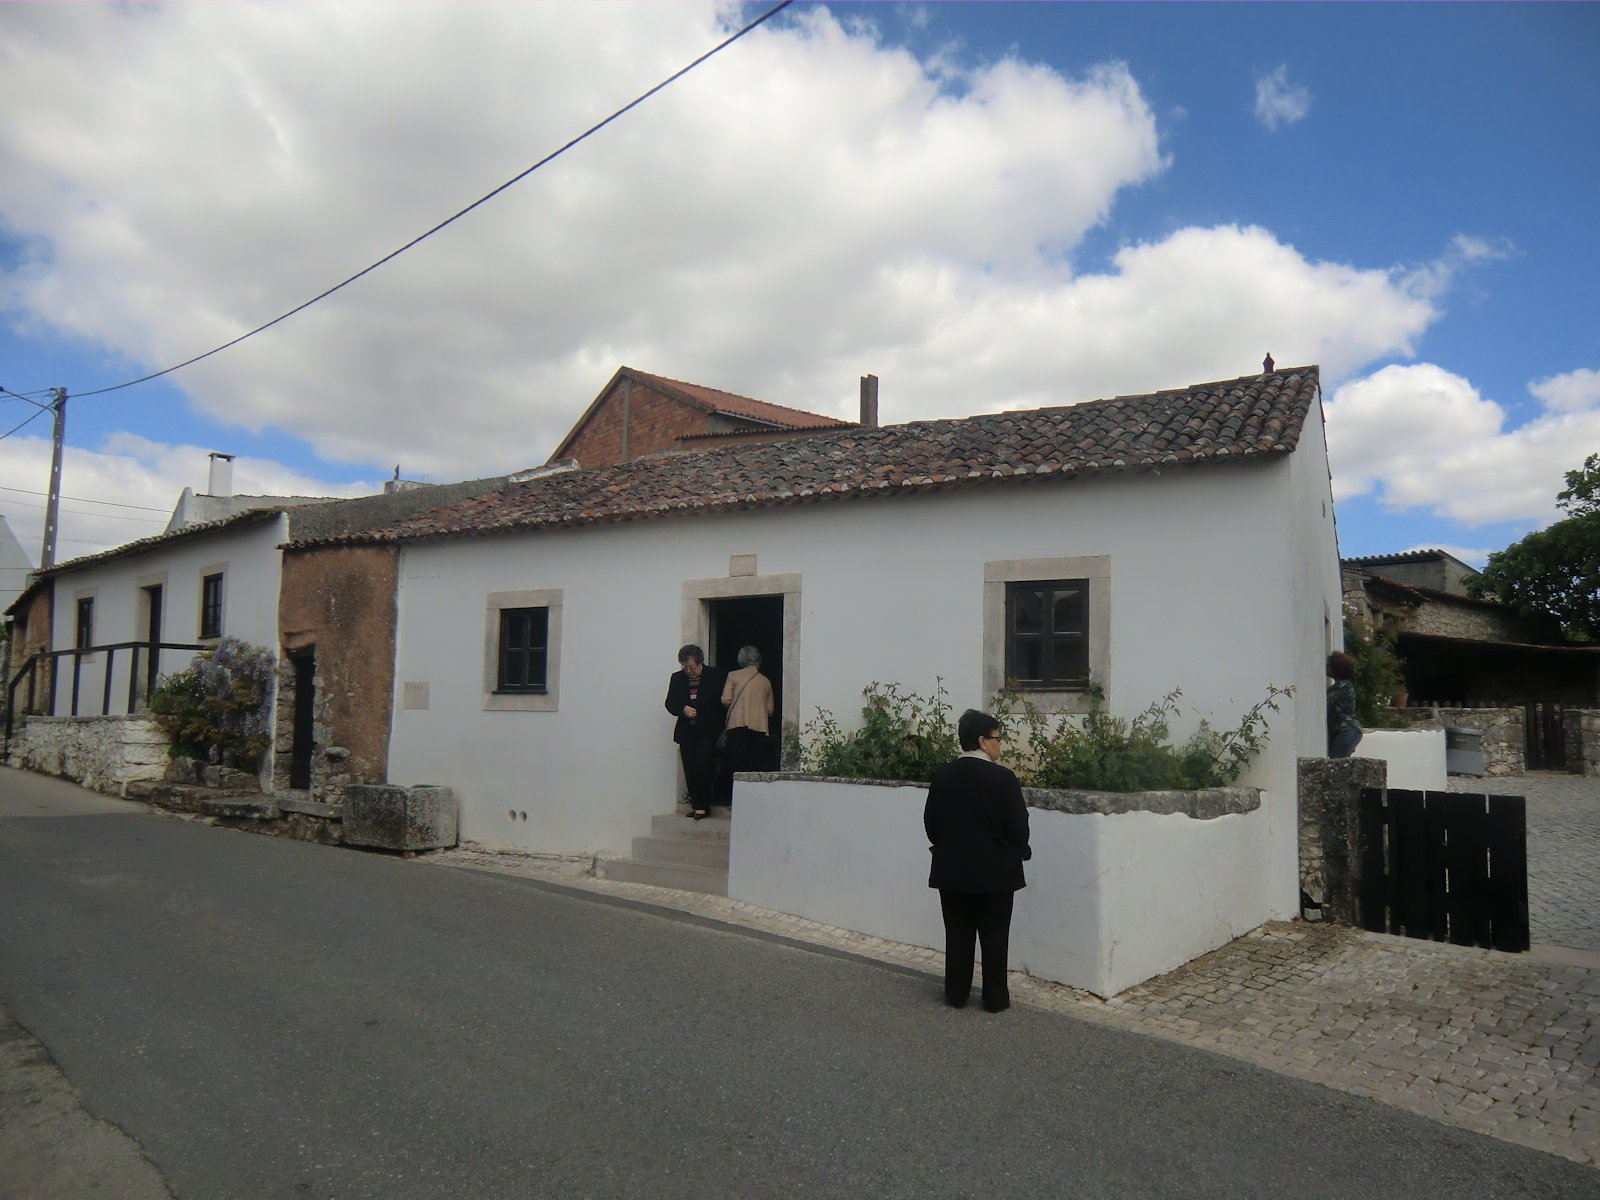 Lúcias Geburtshaus in Aljustrel, heute Museum, in dem auch ihr Geburtszimmer und im Garten der Ort der zweiten Engelserscheinung gezeigt wird